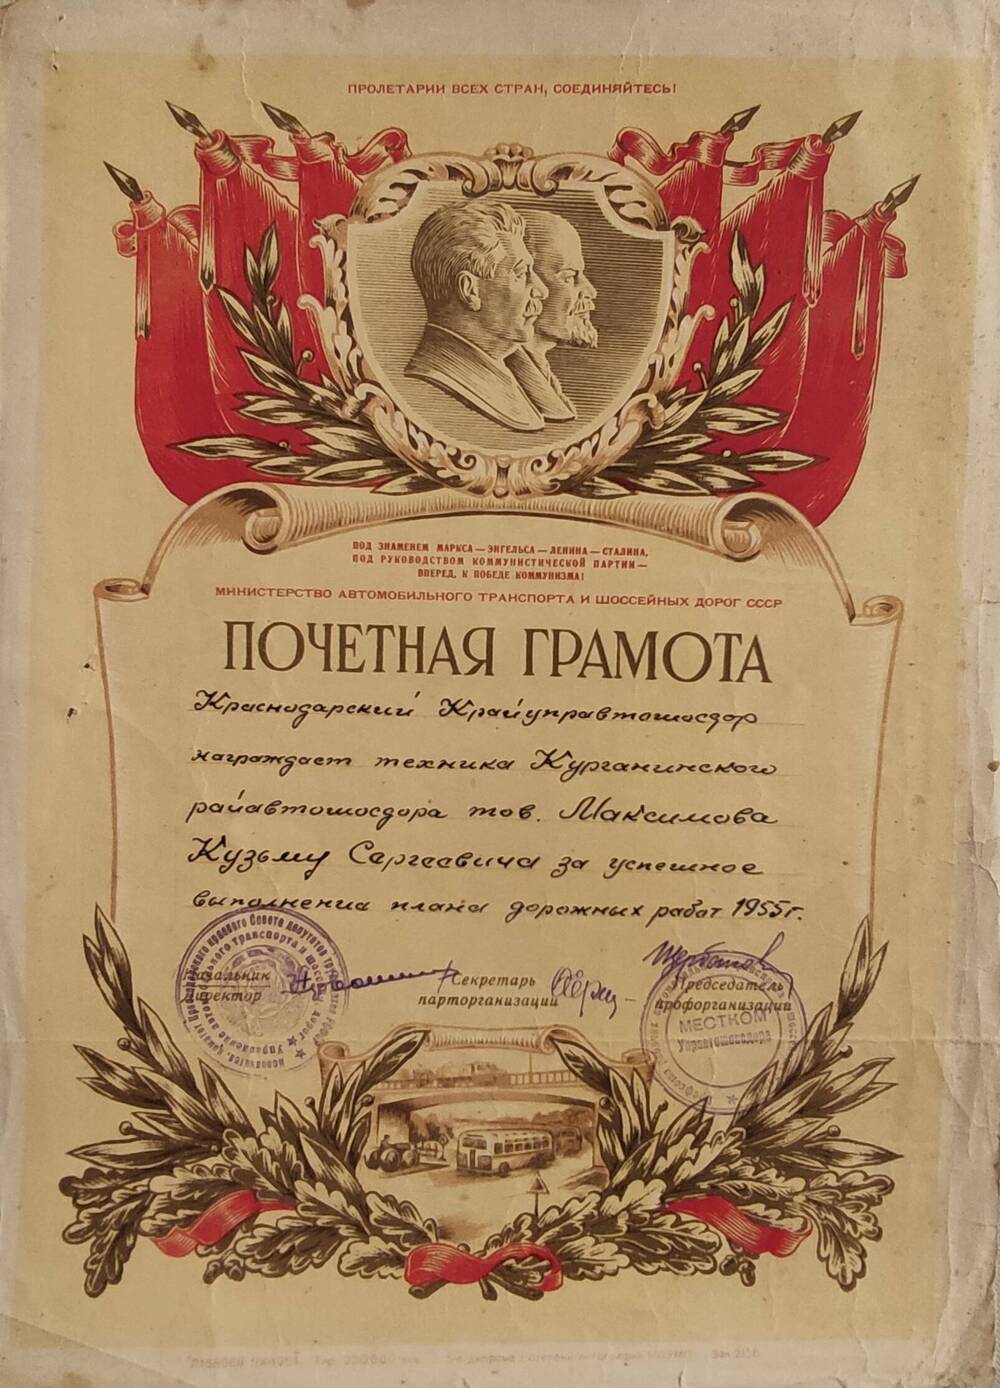 Почетная грамота, которой награжден Максимов К.С за успешное выполнение плана дорожных работ